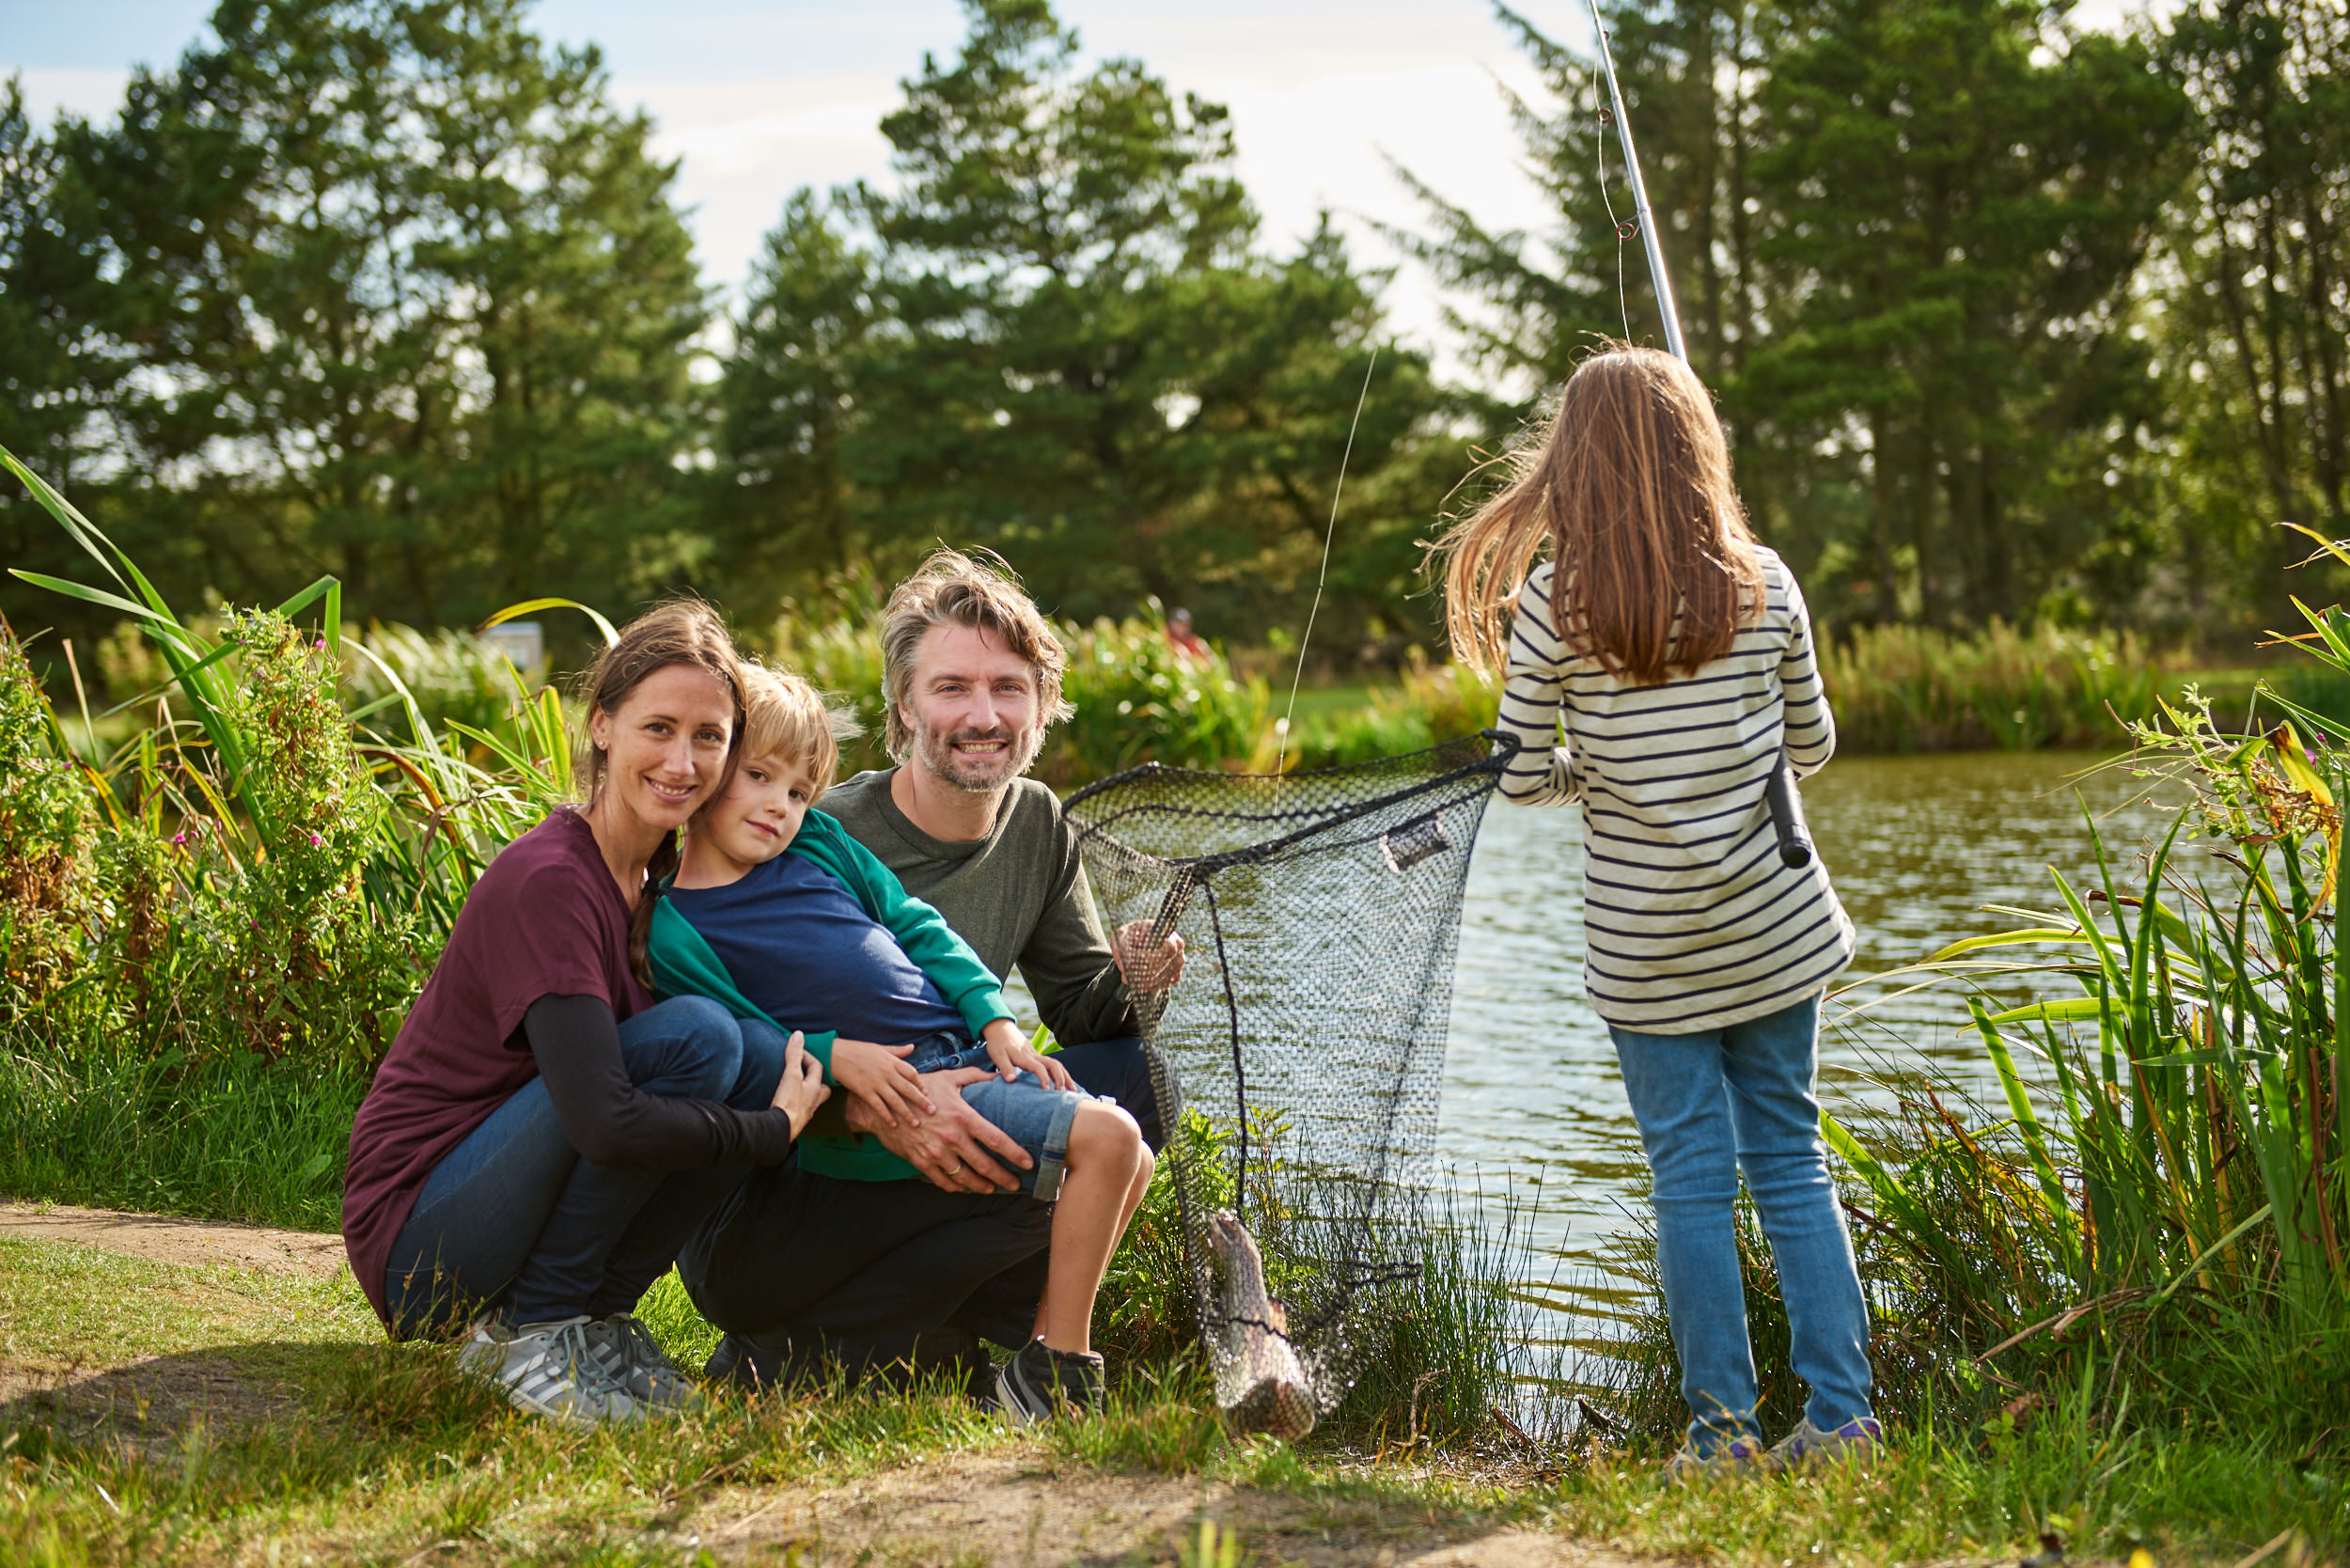 Familie ved sø fanger fisk - turist fotograf - attraktion